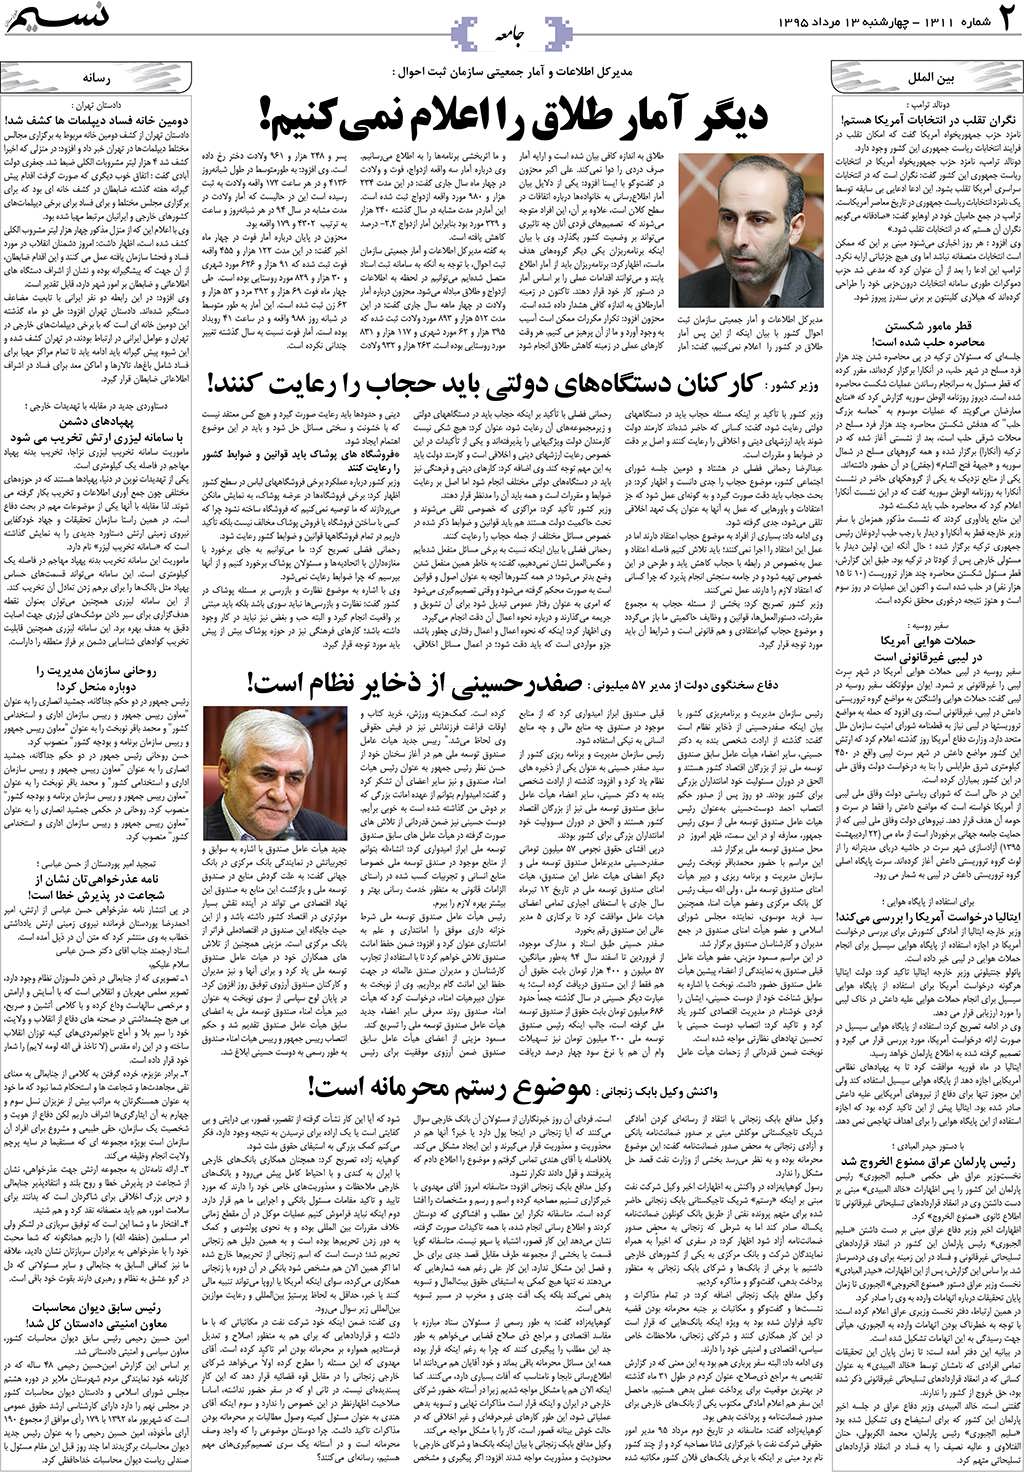 صفحه جامعه روزنامه نسیم شماره 1311